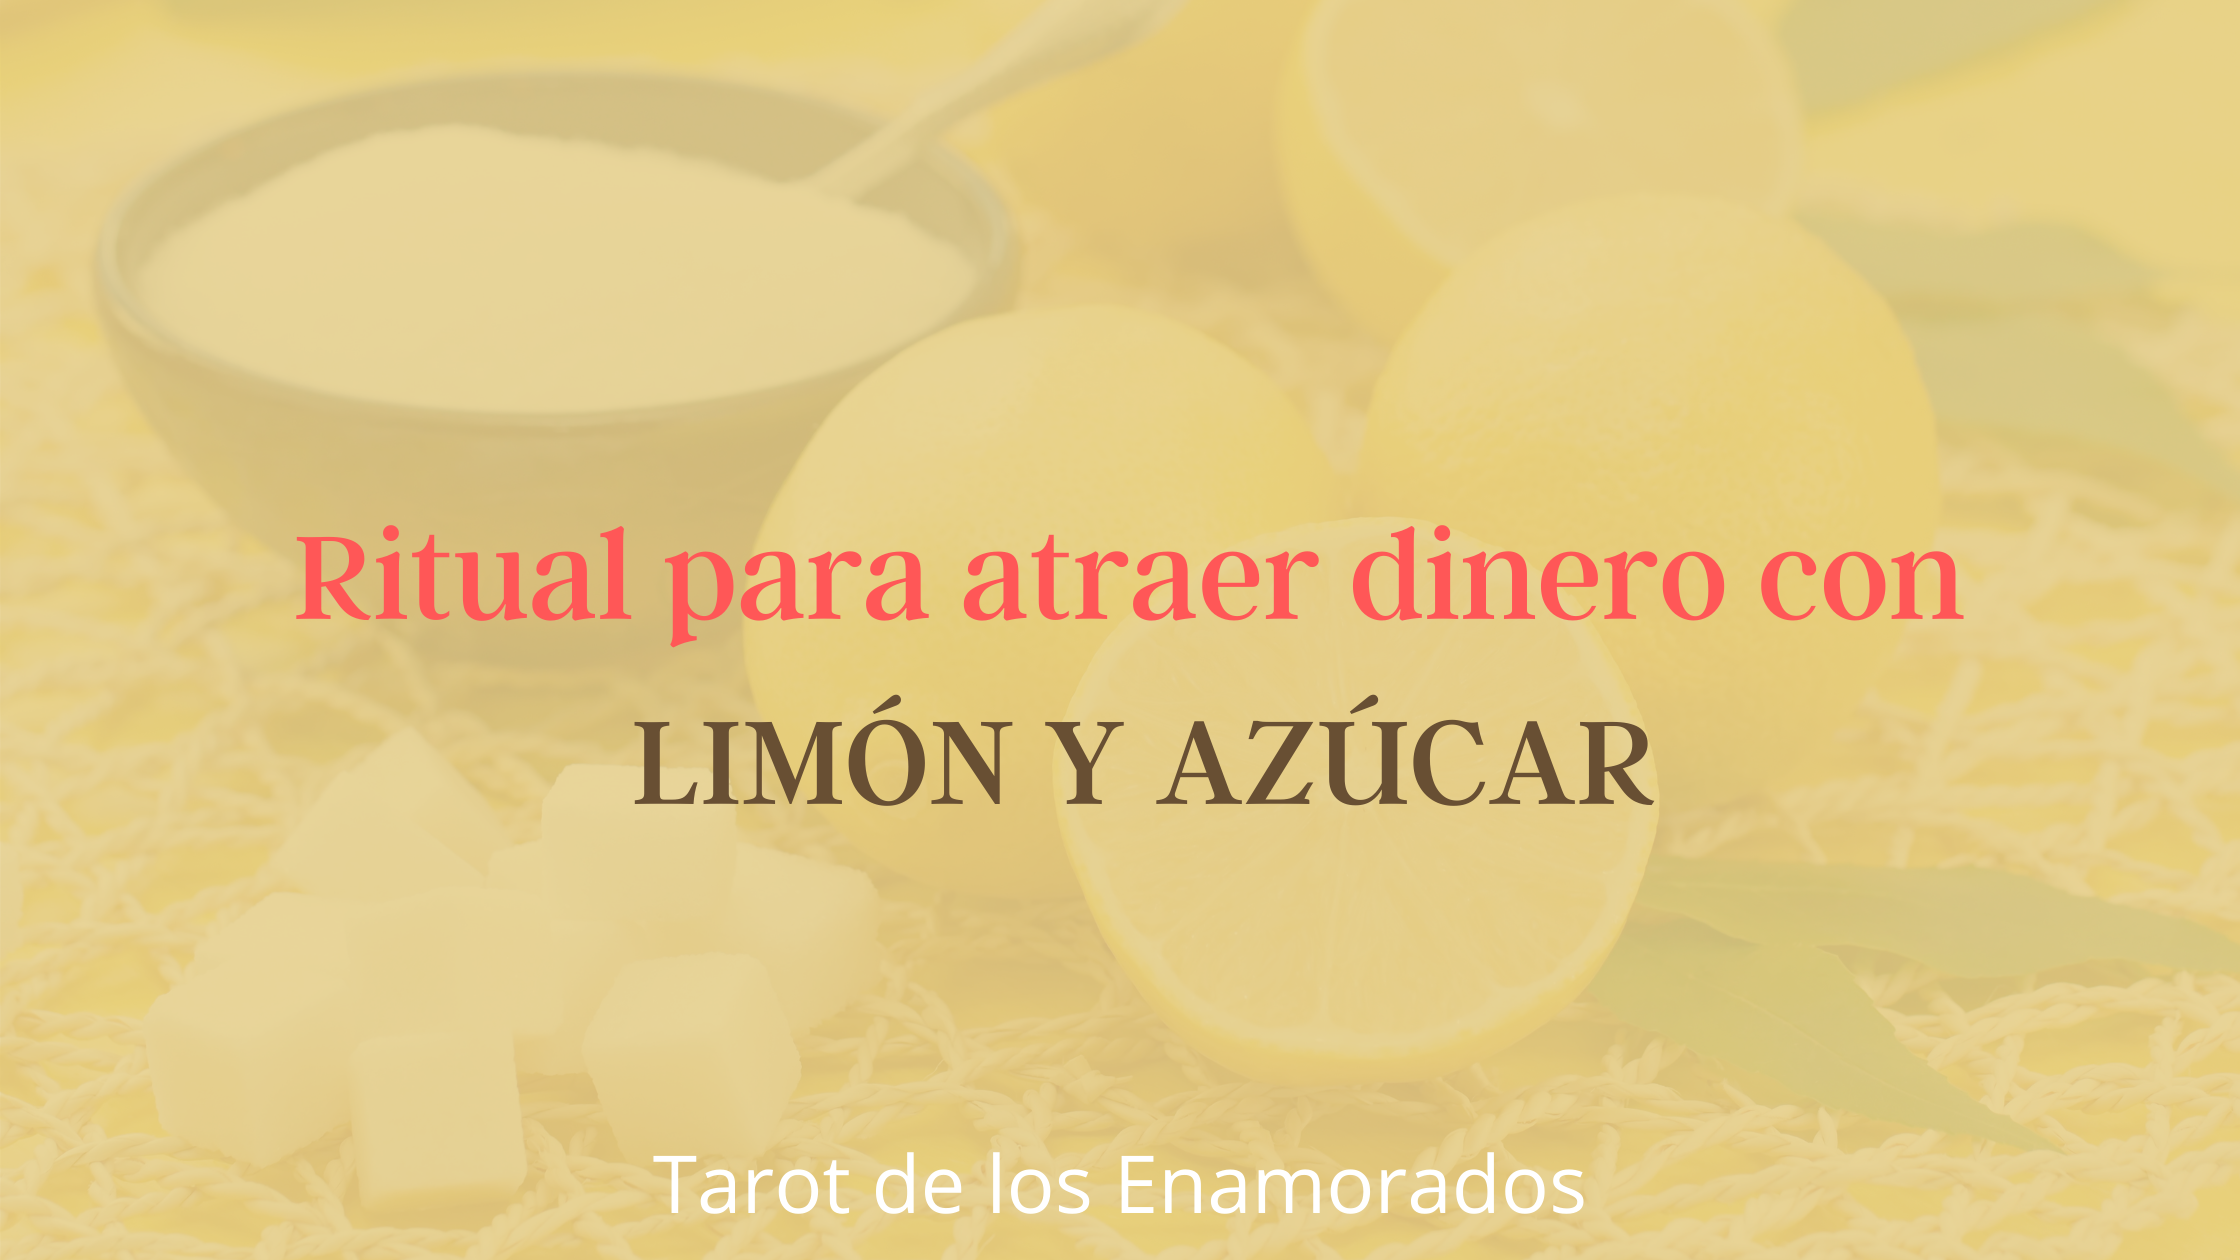 Ritual para atraer dinero con limón y azúcar